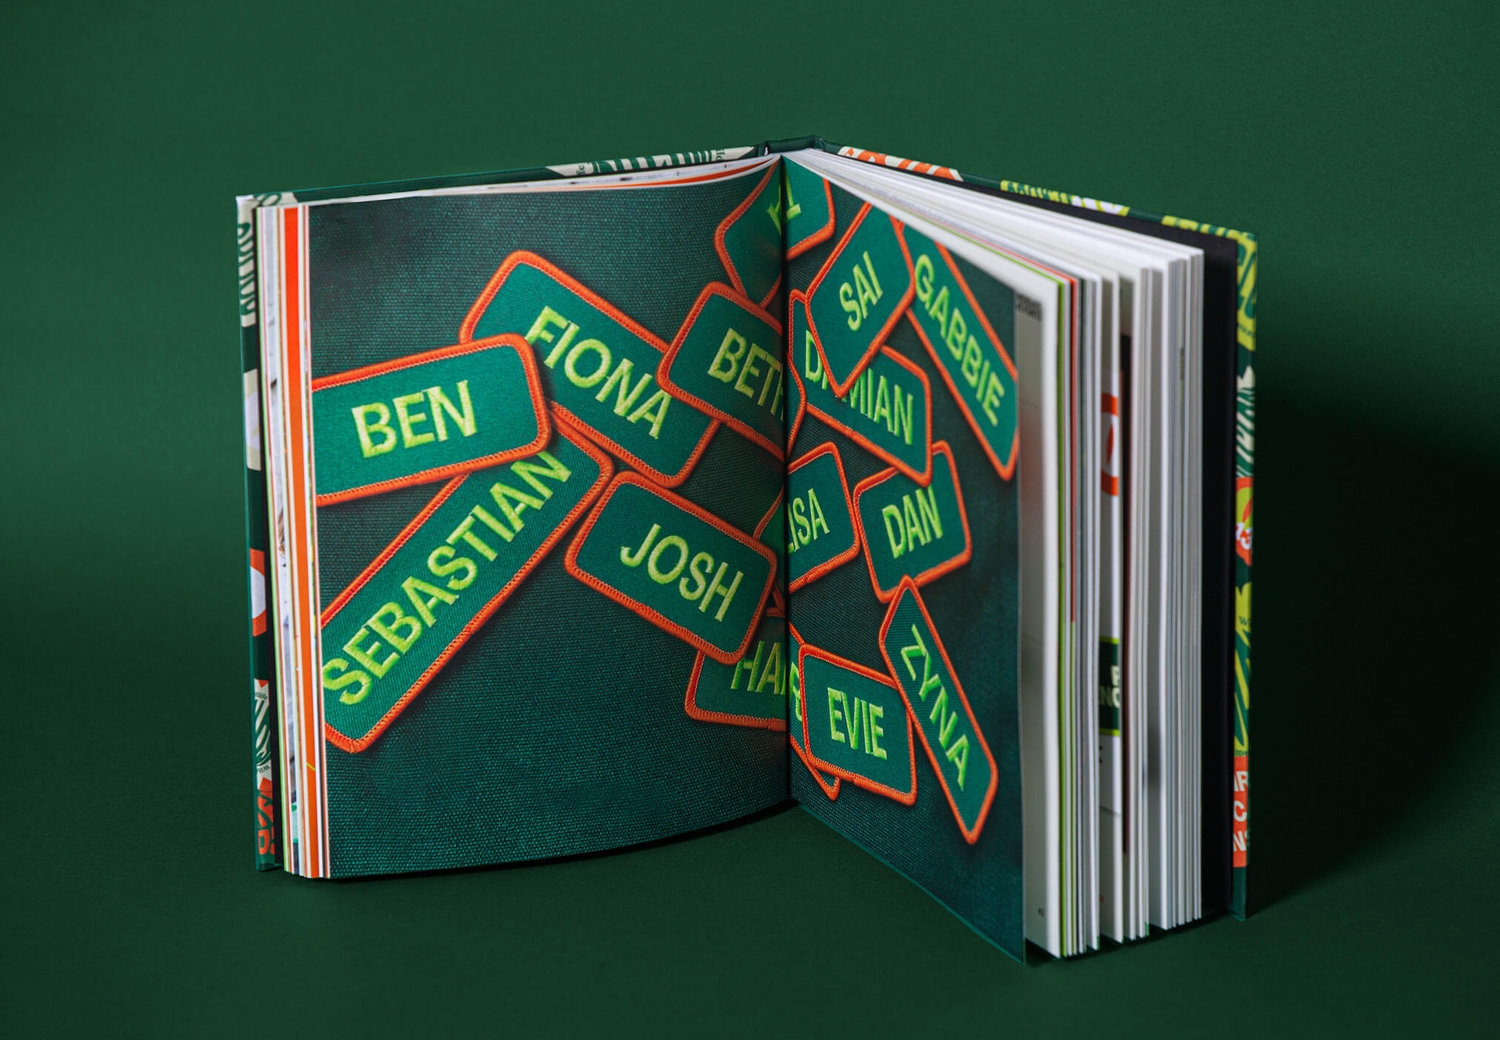 Reptile Encounters - Brandbook Internal Spread Patches | Atollon - a design company